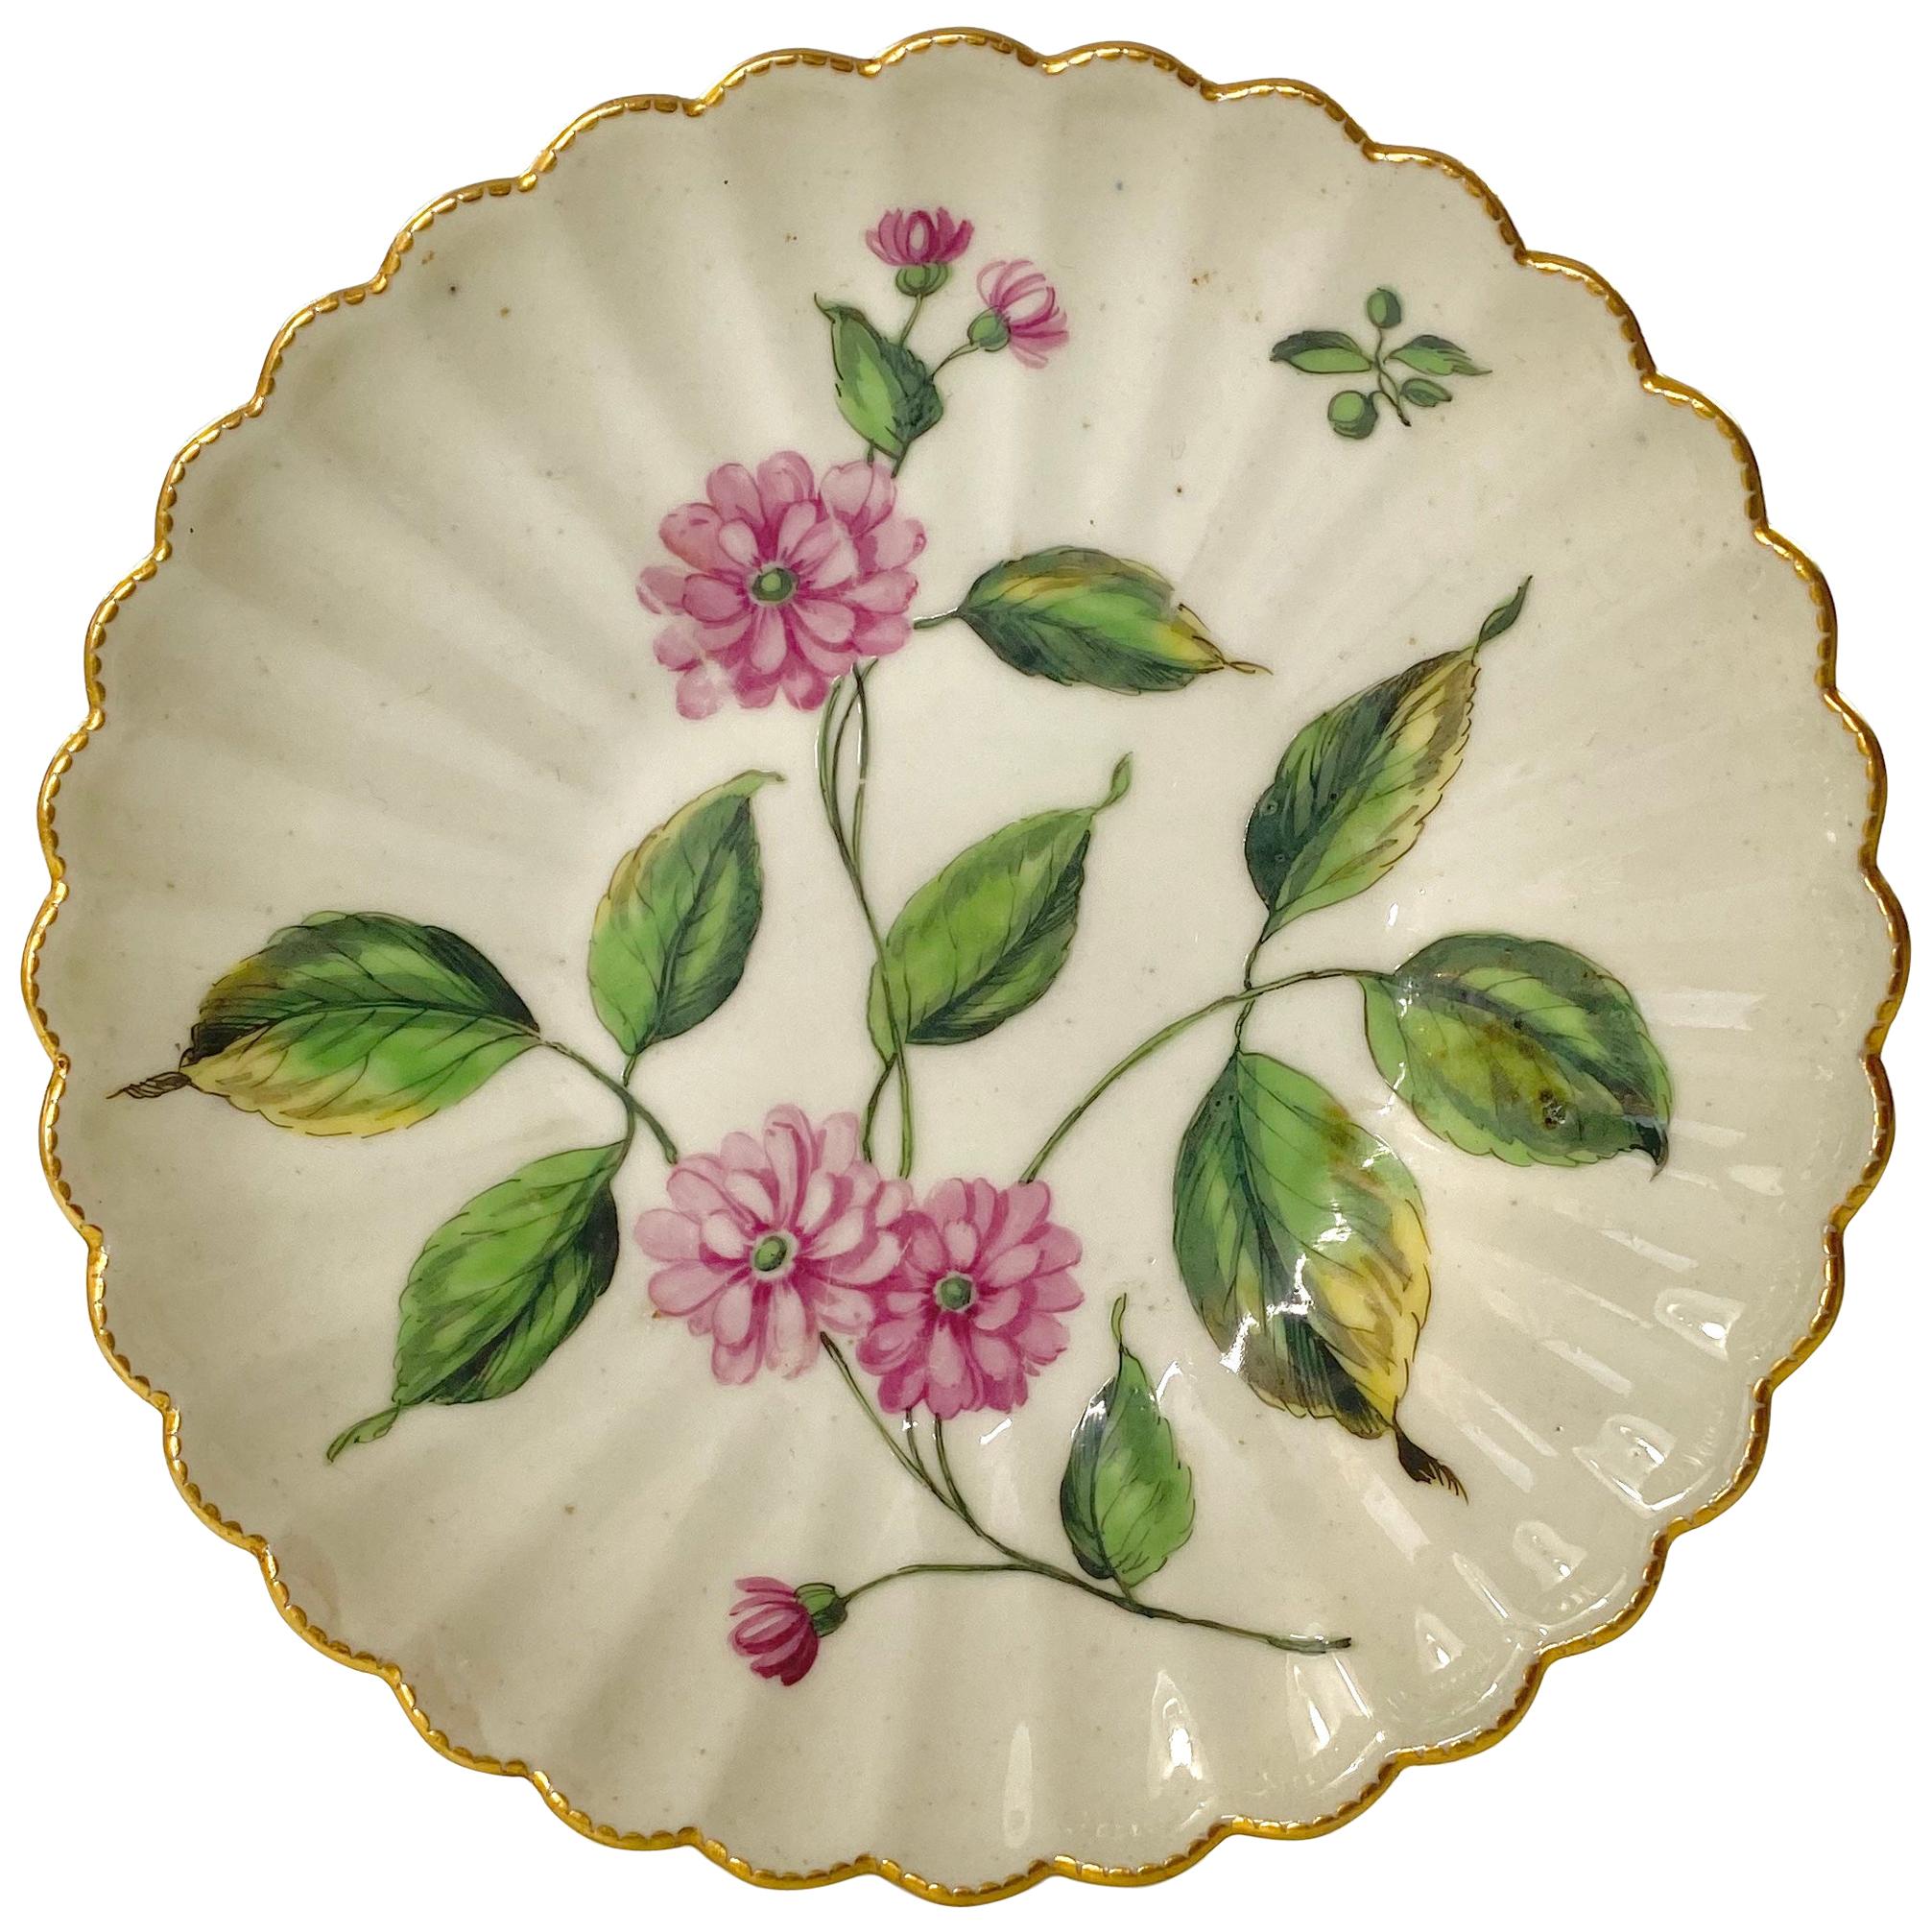 Chelsea Porcelain ‘Botanical’ Saucer, c. 1760